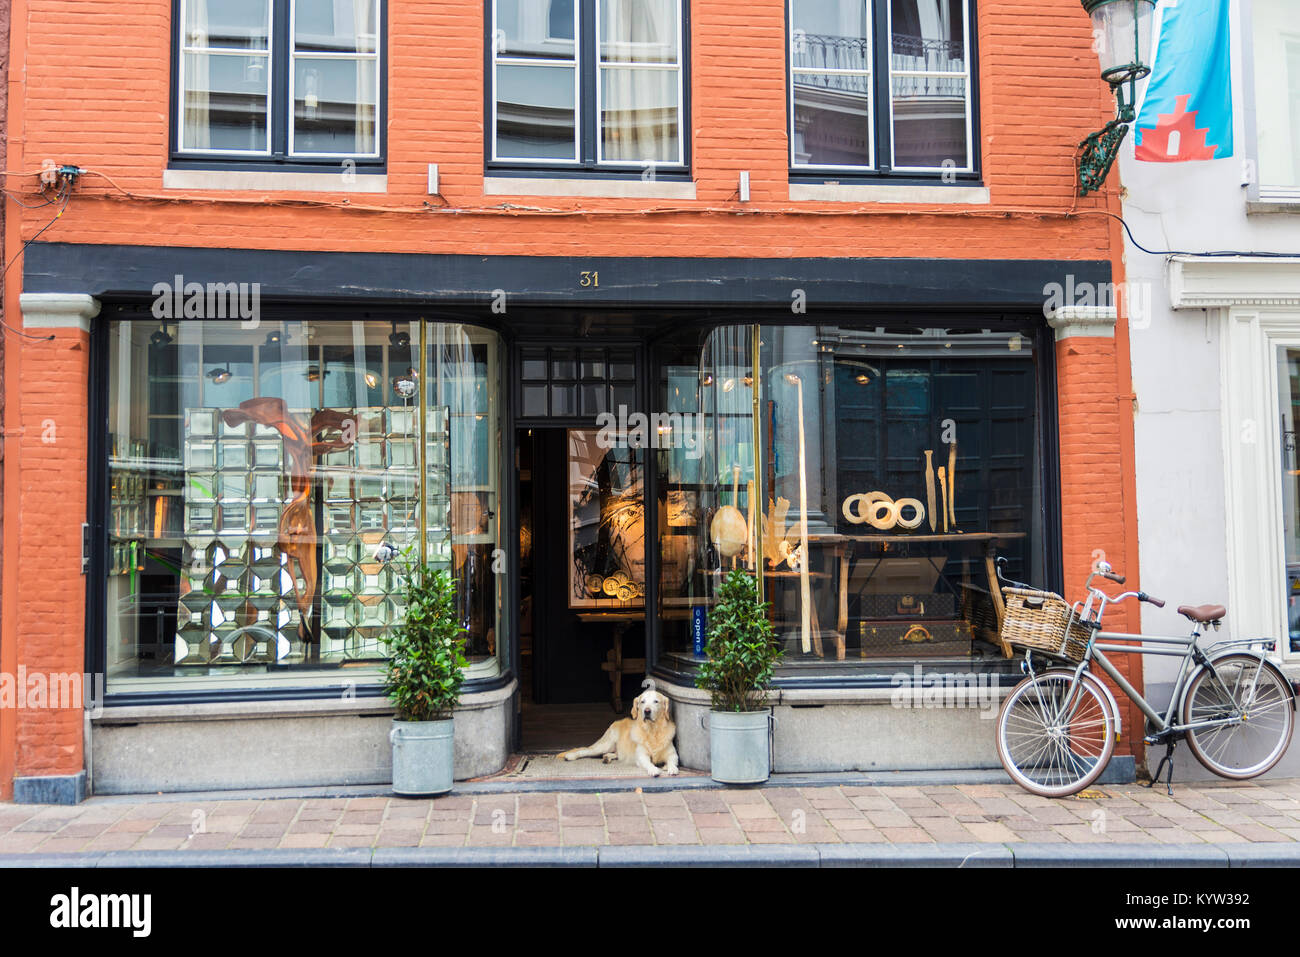 Bruges, Belgio - 31 agosto 2017: negozio o galleria d'arte con un cane in appoggio nel suo ingresso nella città medievale di Bruges, Belgio Foto Stock